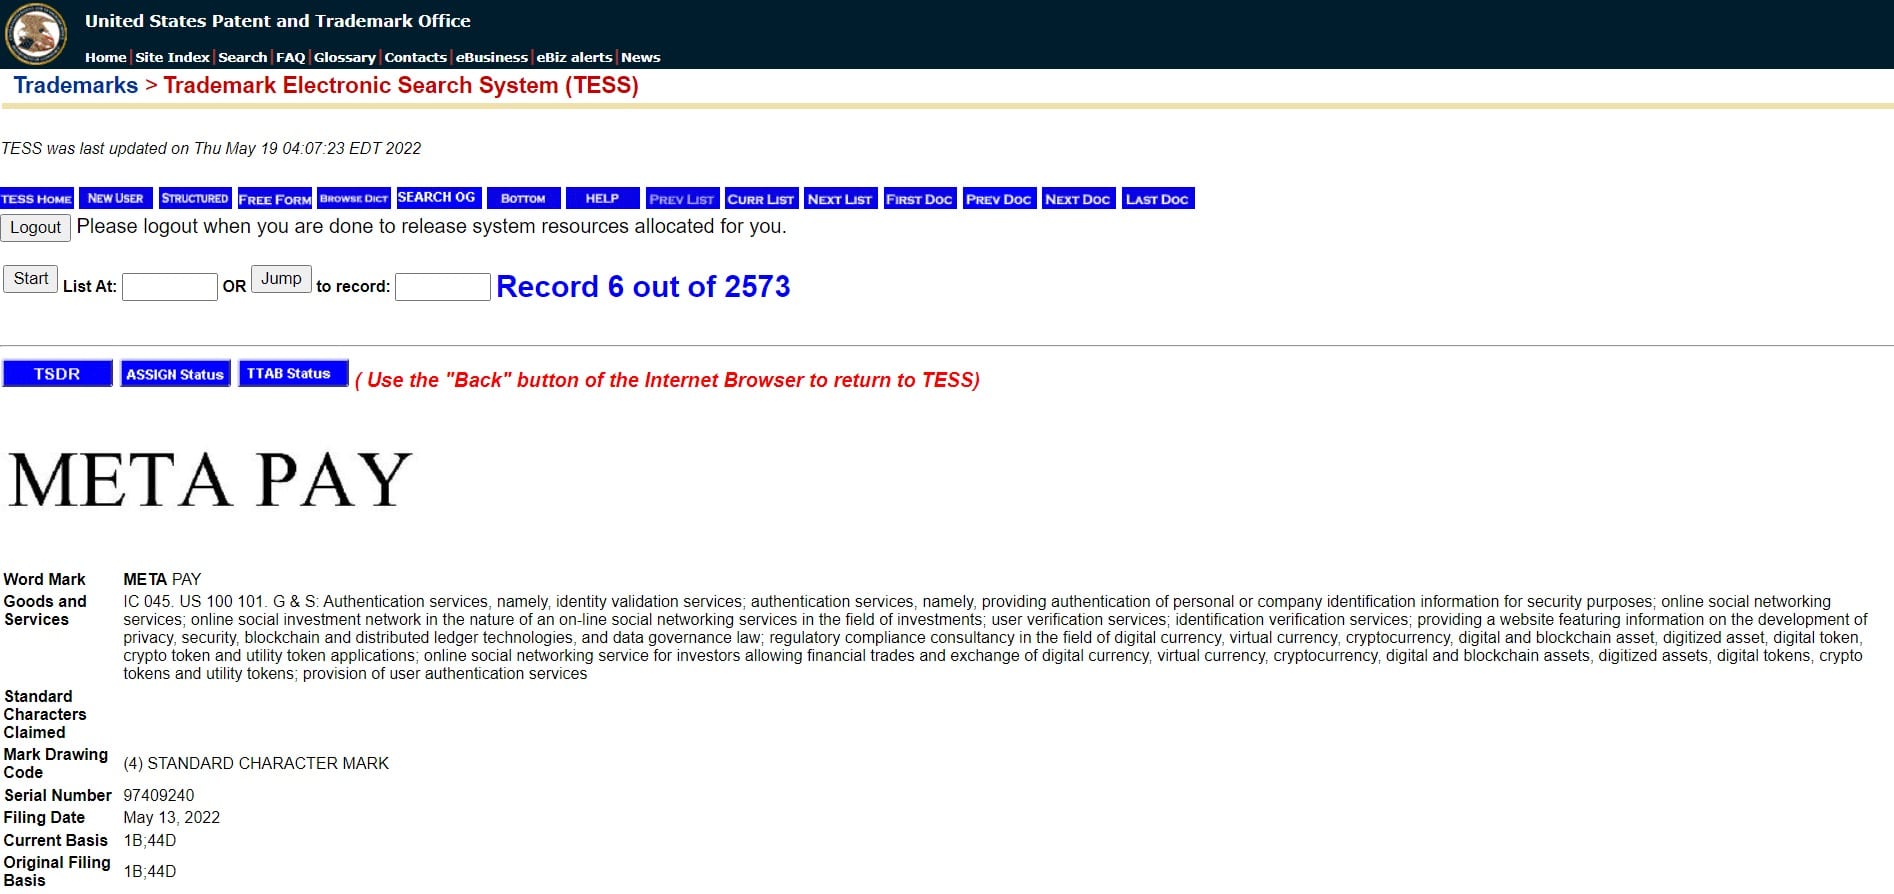 米国特許商標庁のウェブサイトにおけるメタ社のメタペイ商標登録